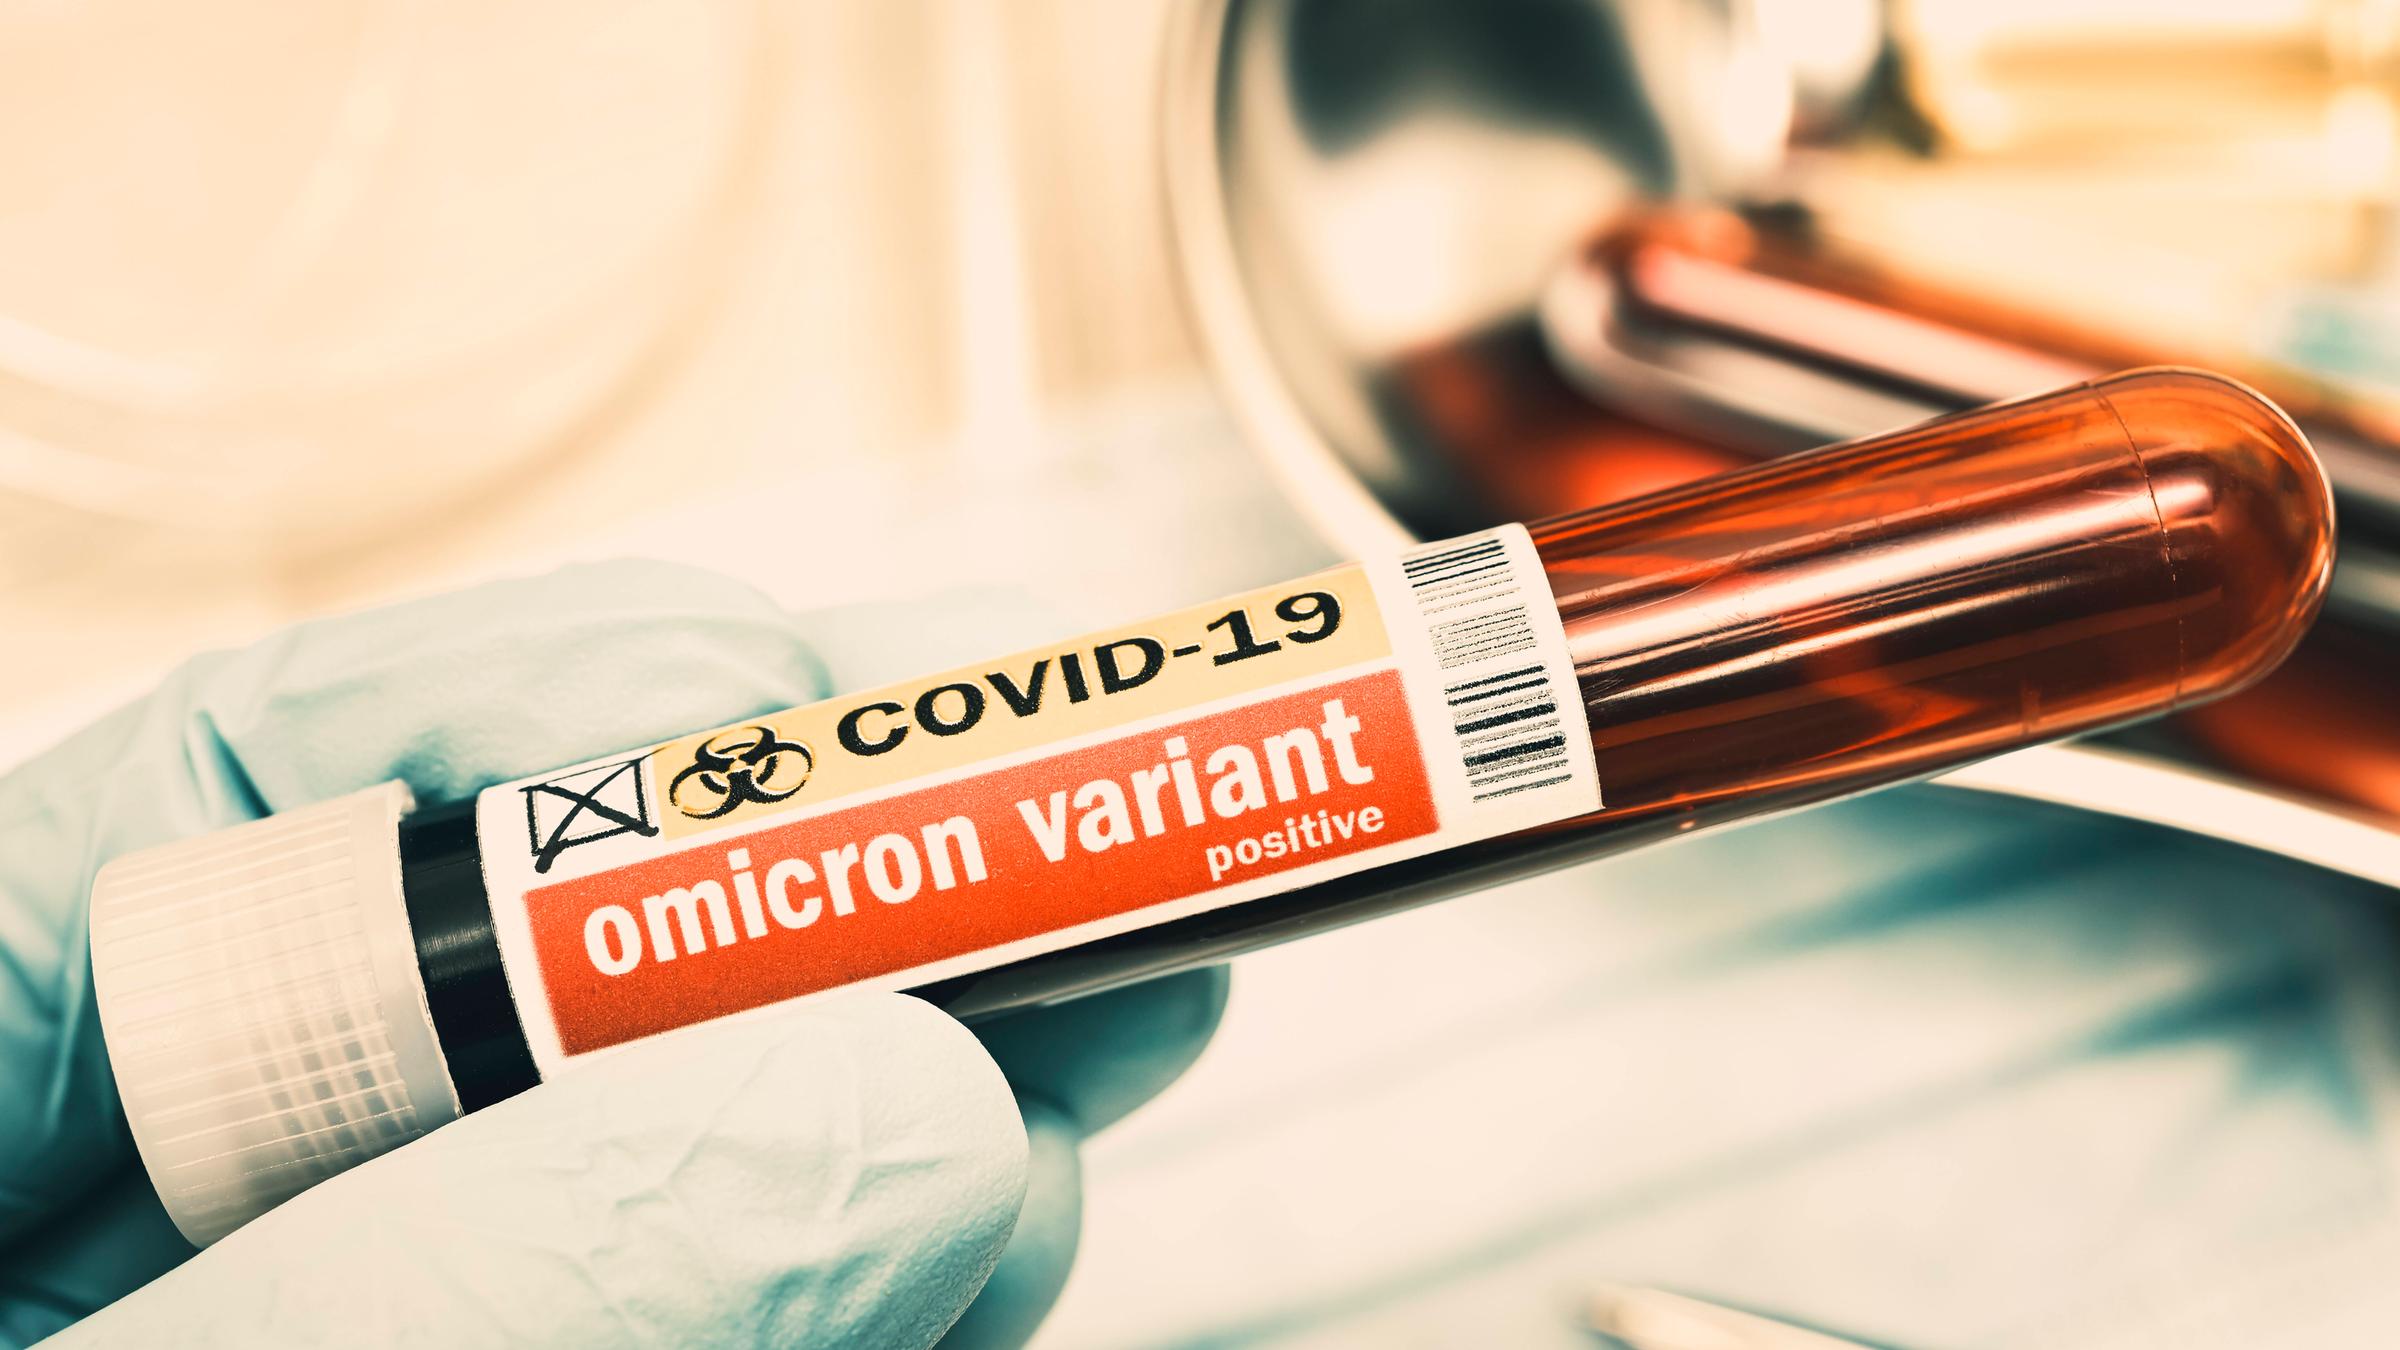 Ein Blutentnahmeröhrchen mit der Aufschrift "Omicron variant"...</p>

                        <a href=